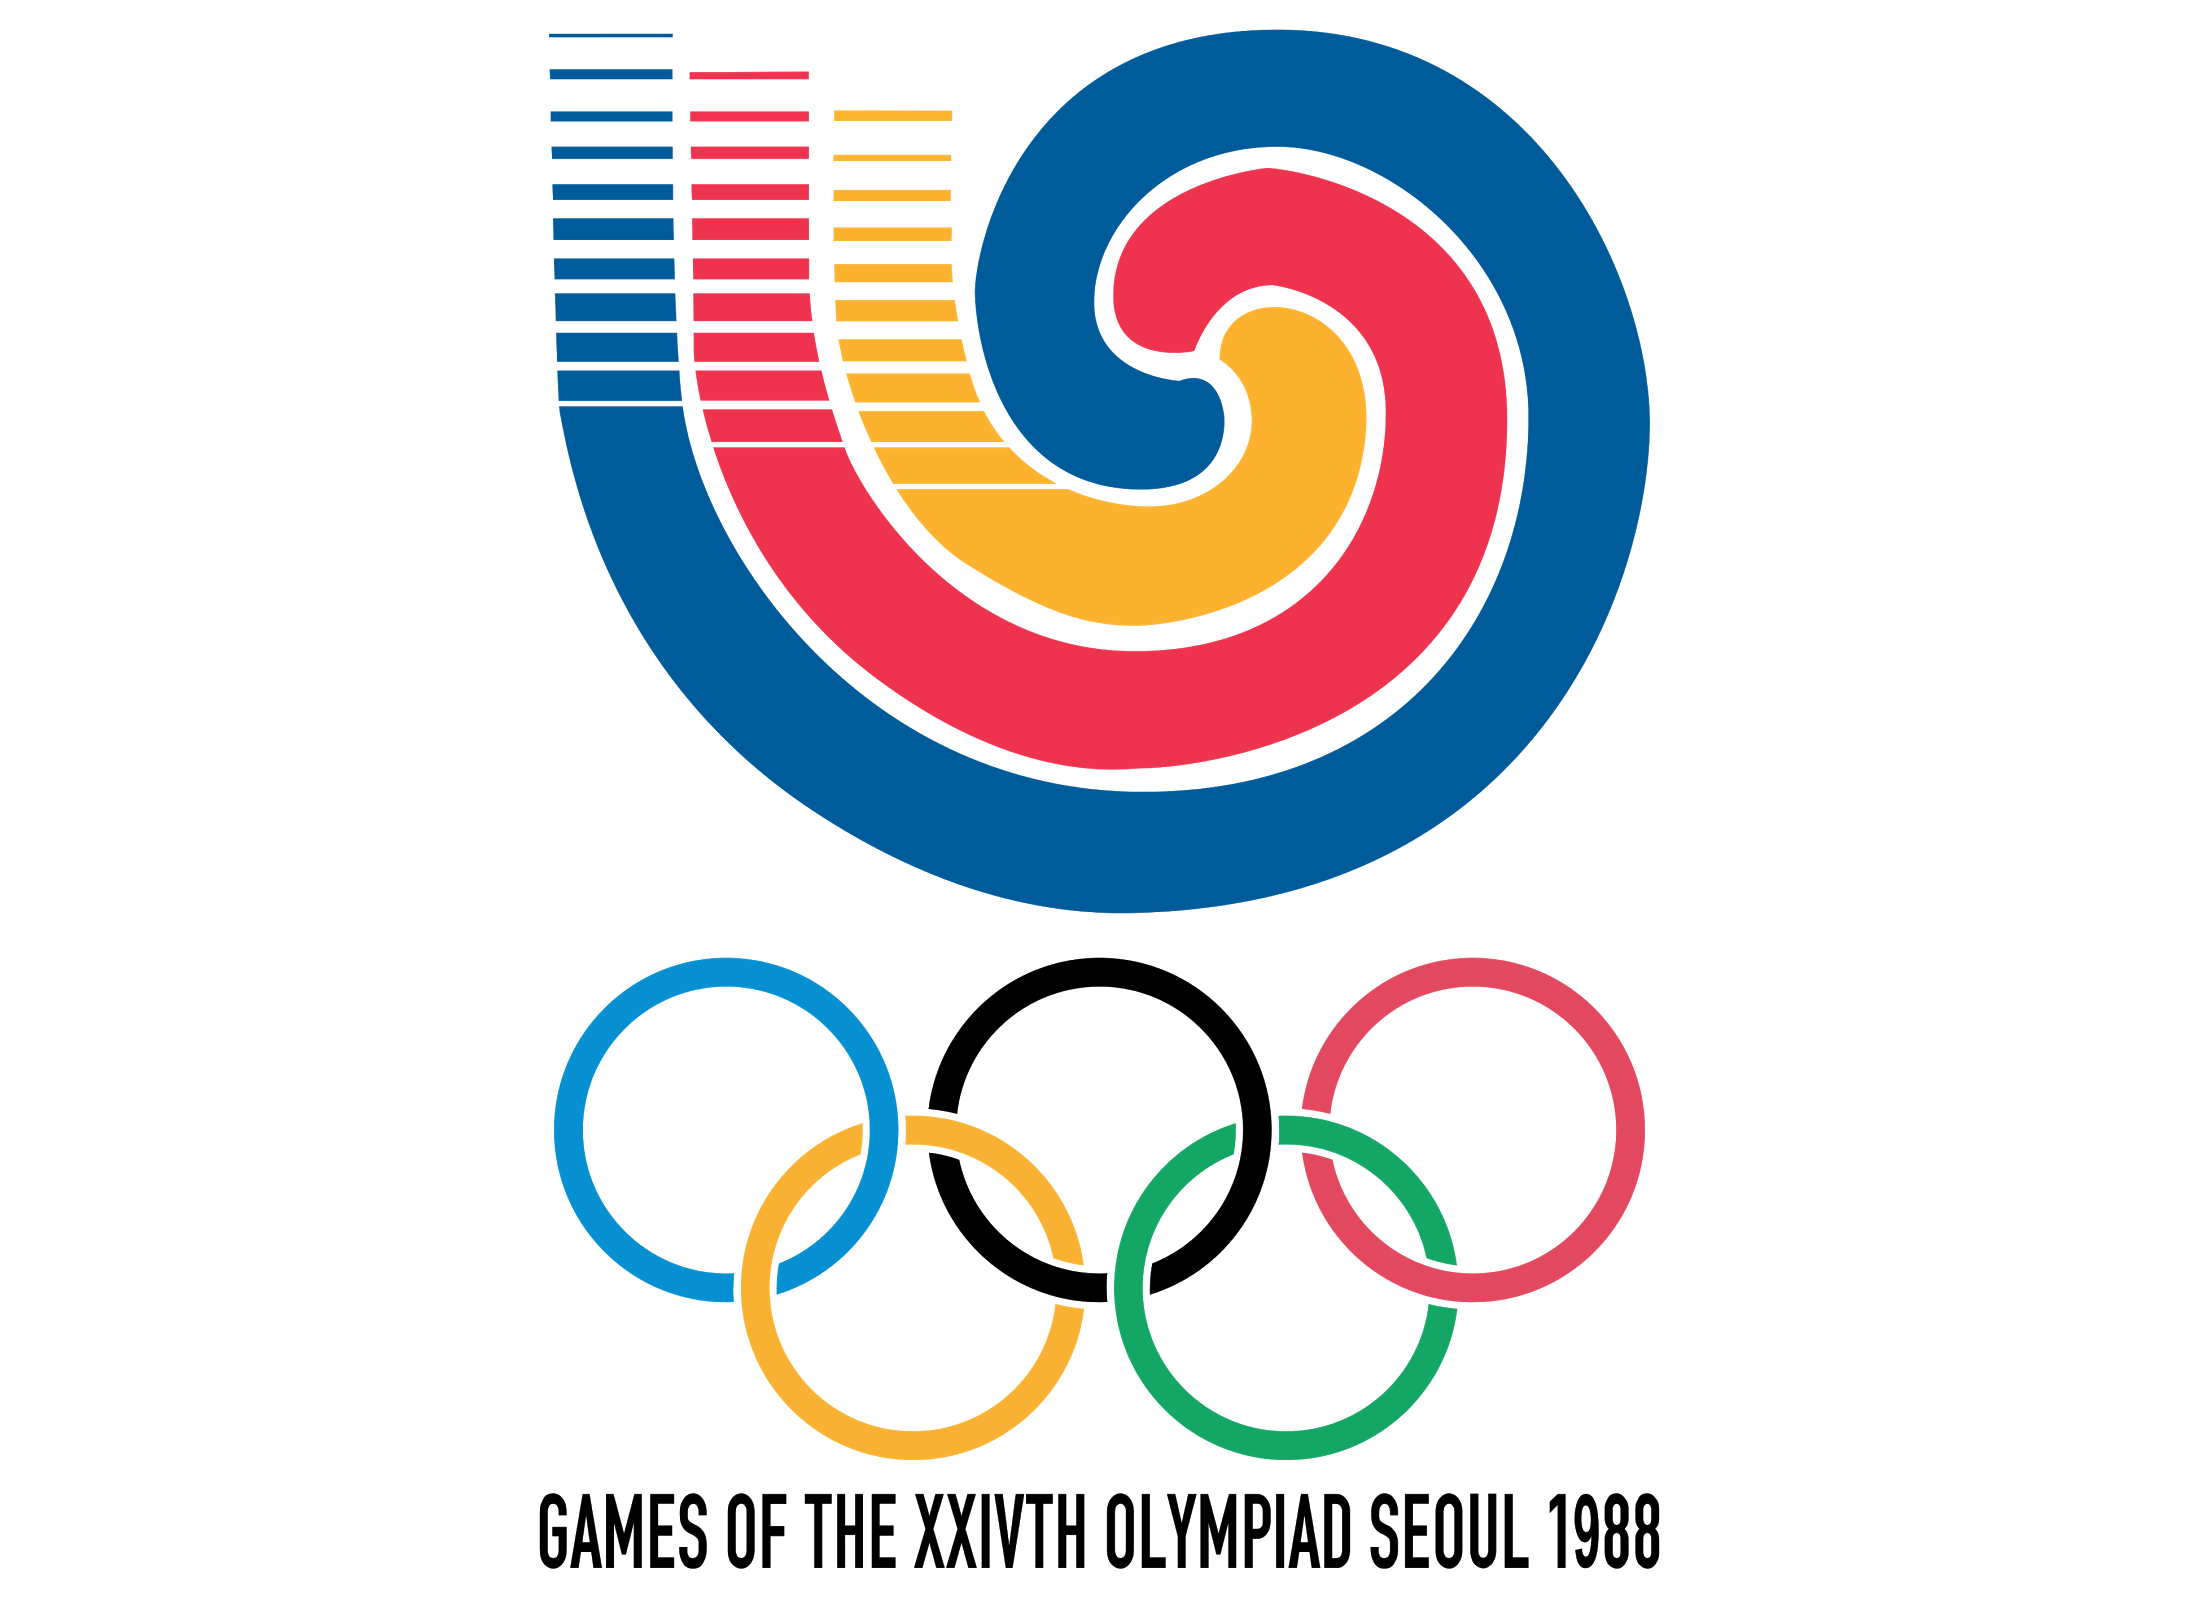 Seoul – Summer Olympics 1988